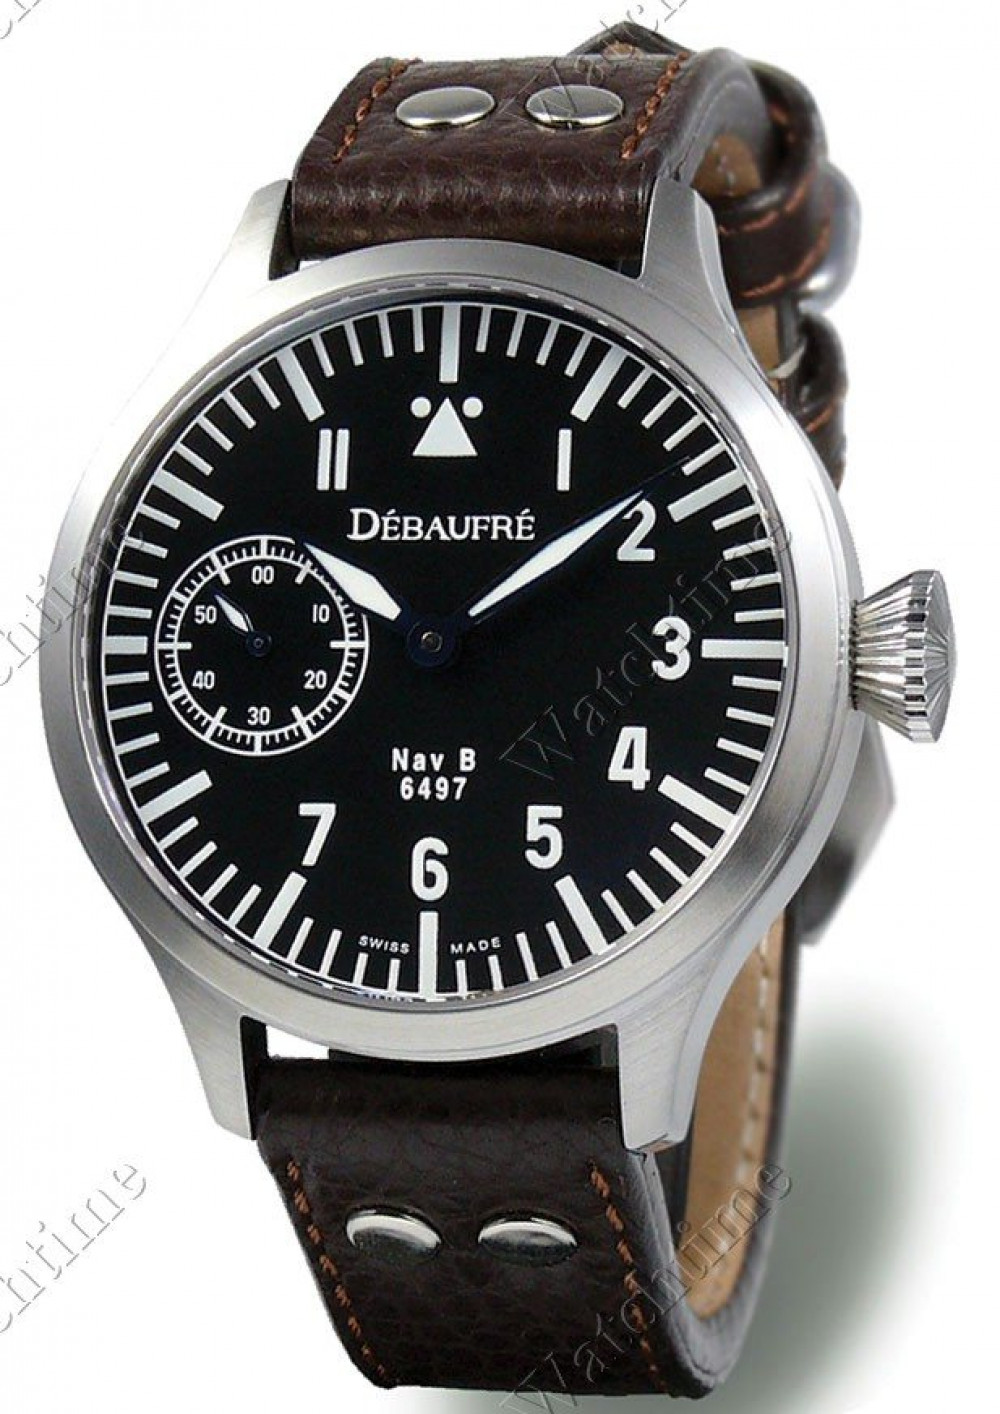 Zegarek firmy Dèbaufrè Watches, model Nav B Classic